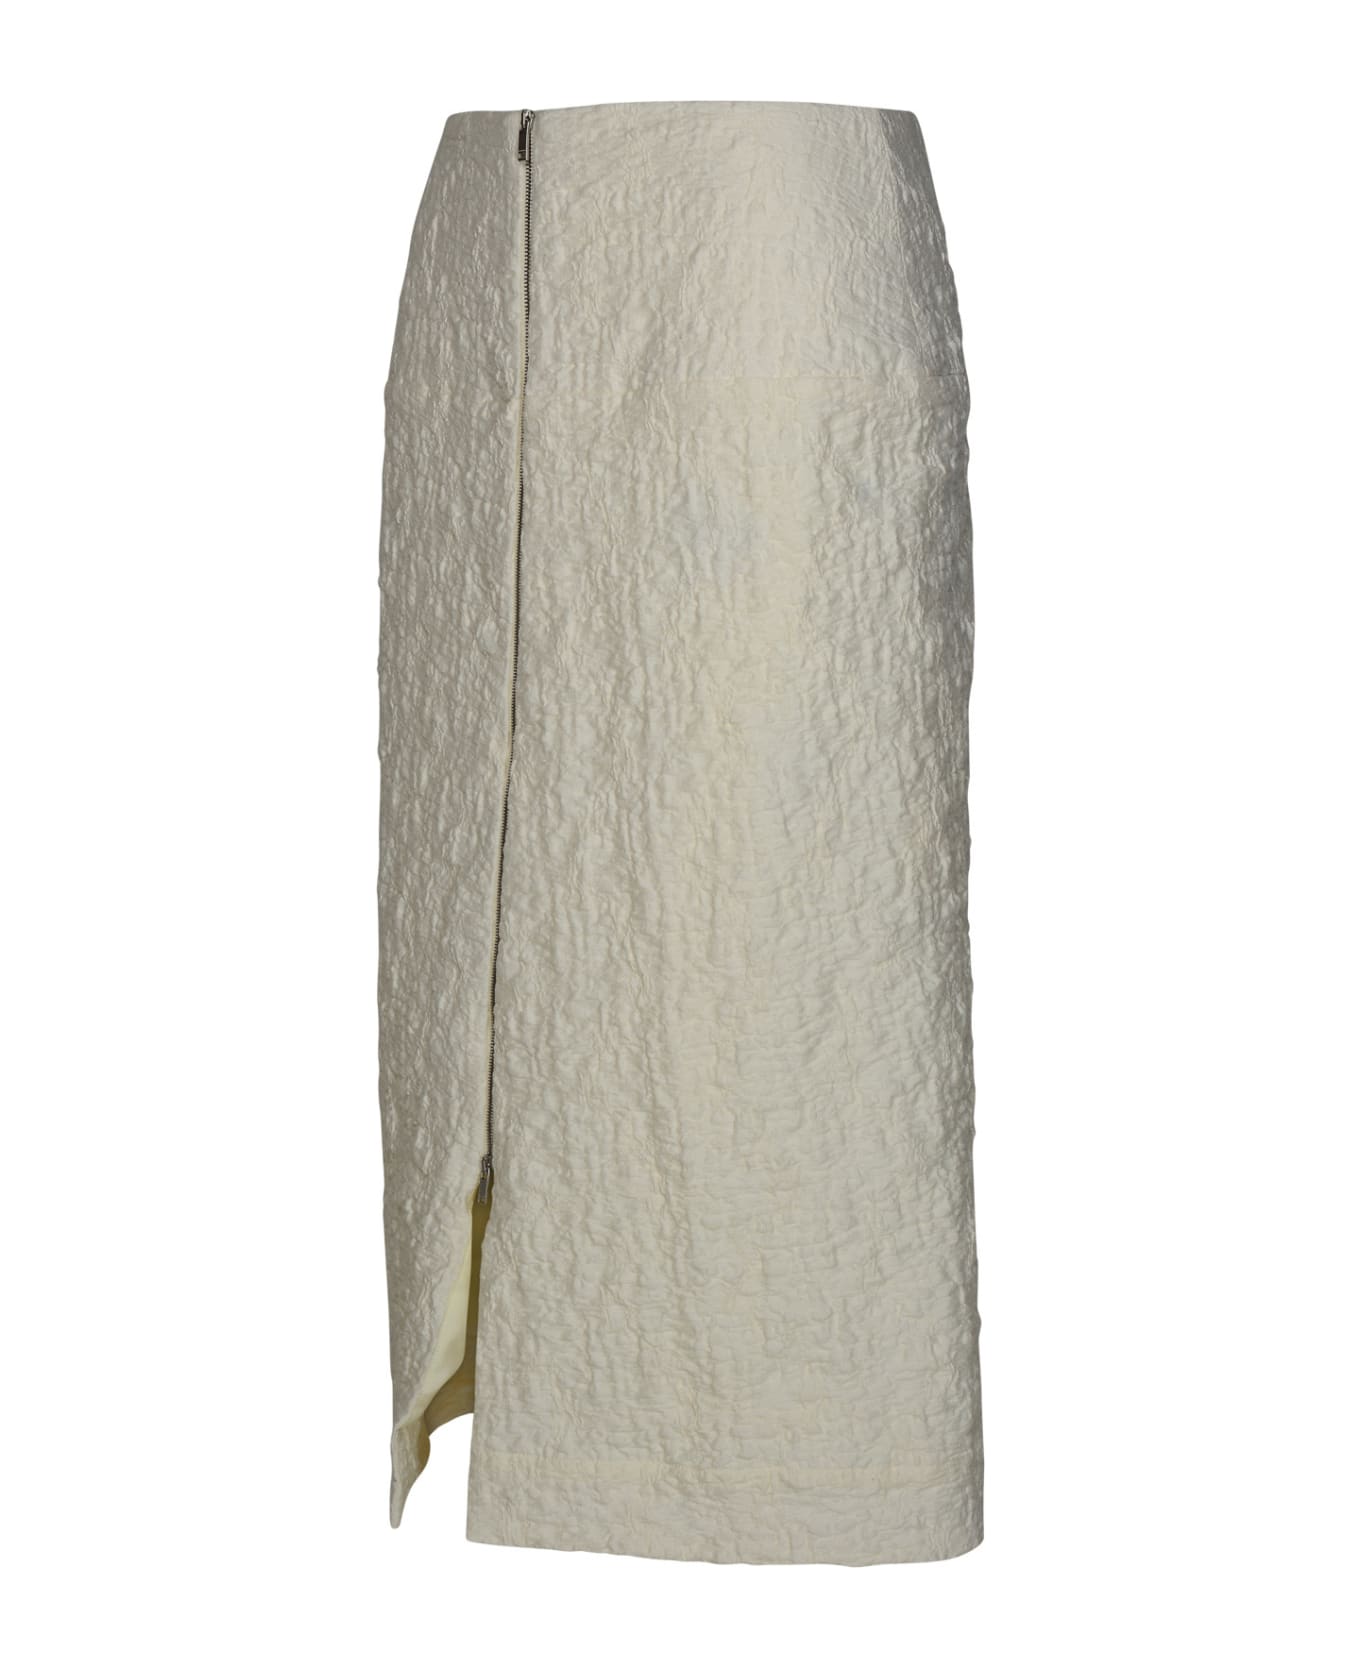 Jil Sander White Cotton Blend Skirt - White スカート